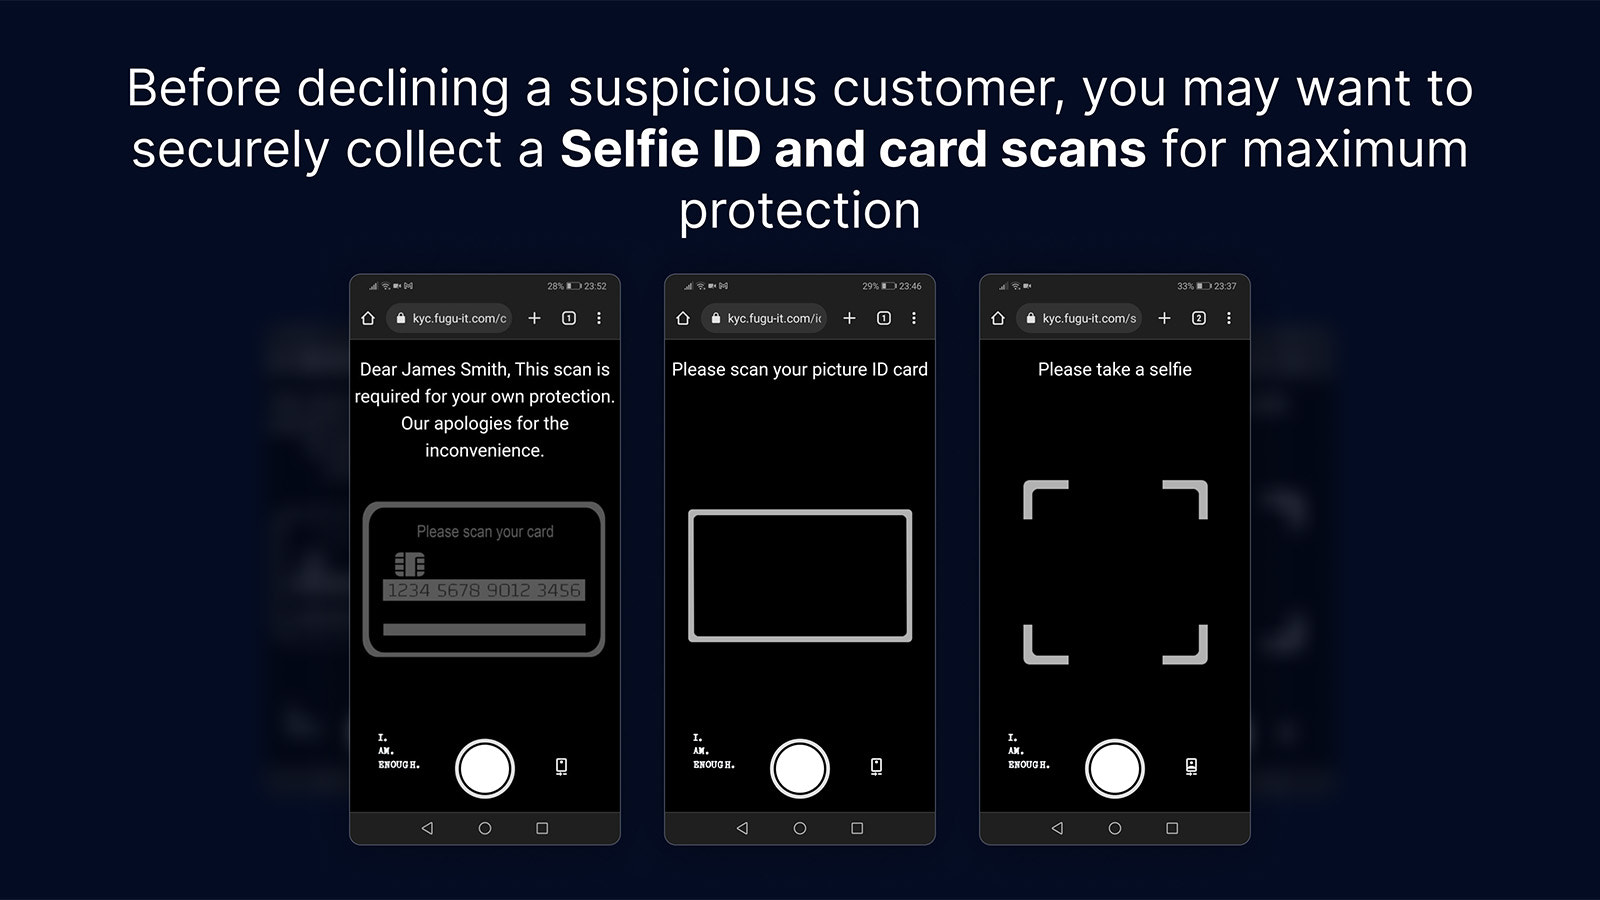 Cuando sea requerido, recoge de manera segura las identificaciones con Selfie y los escaneos de tarjetas